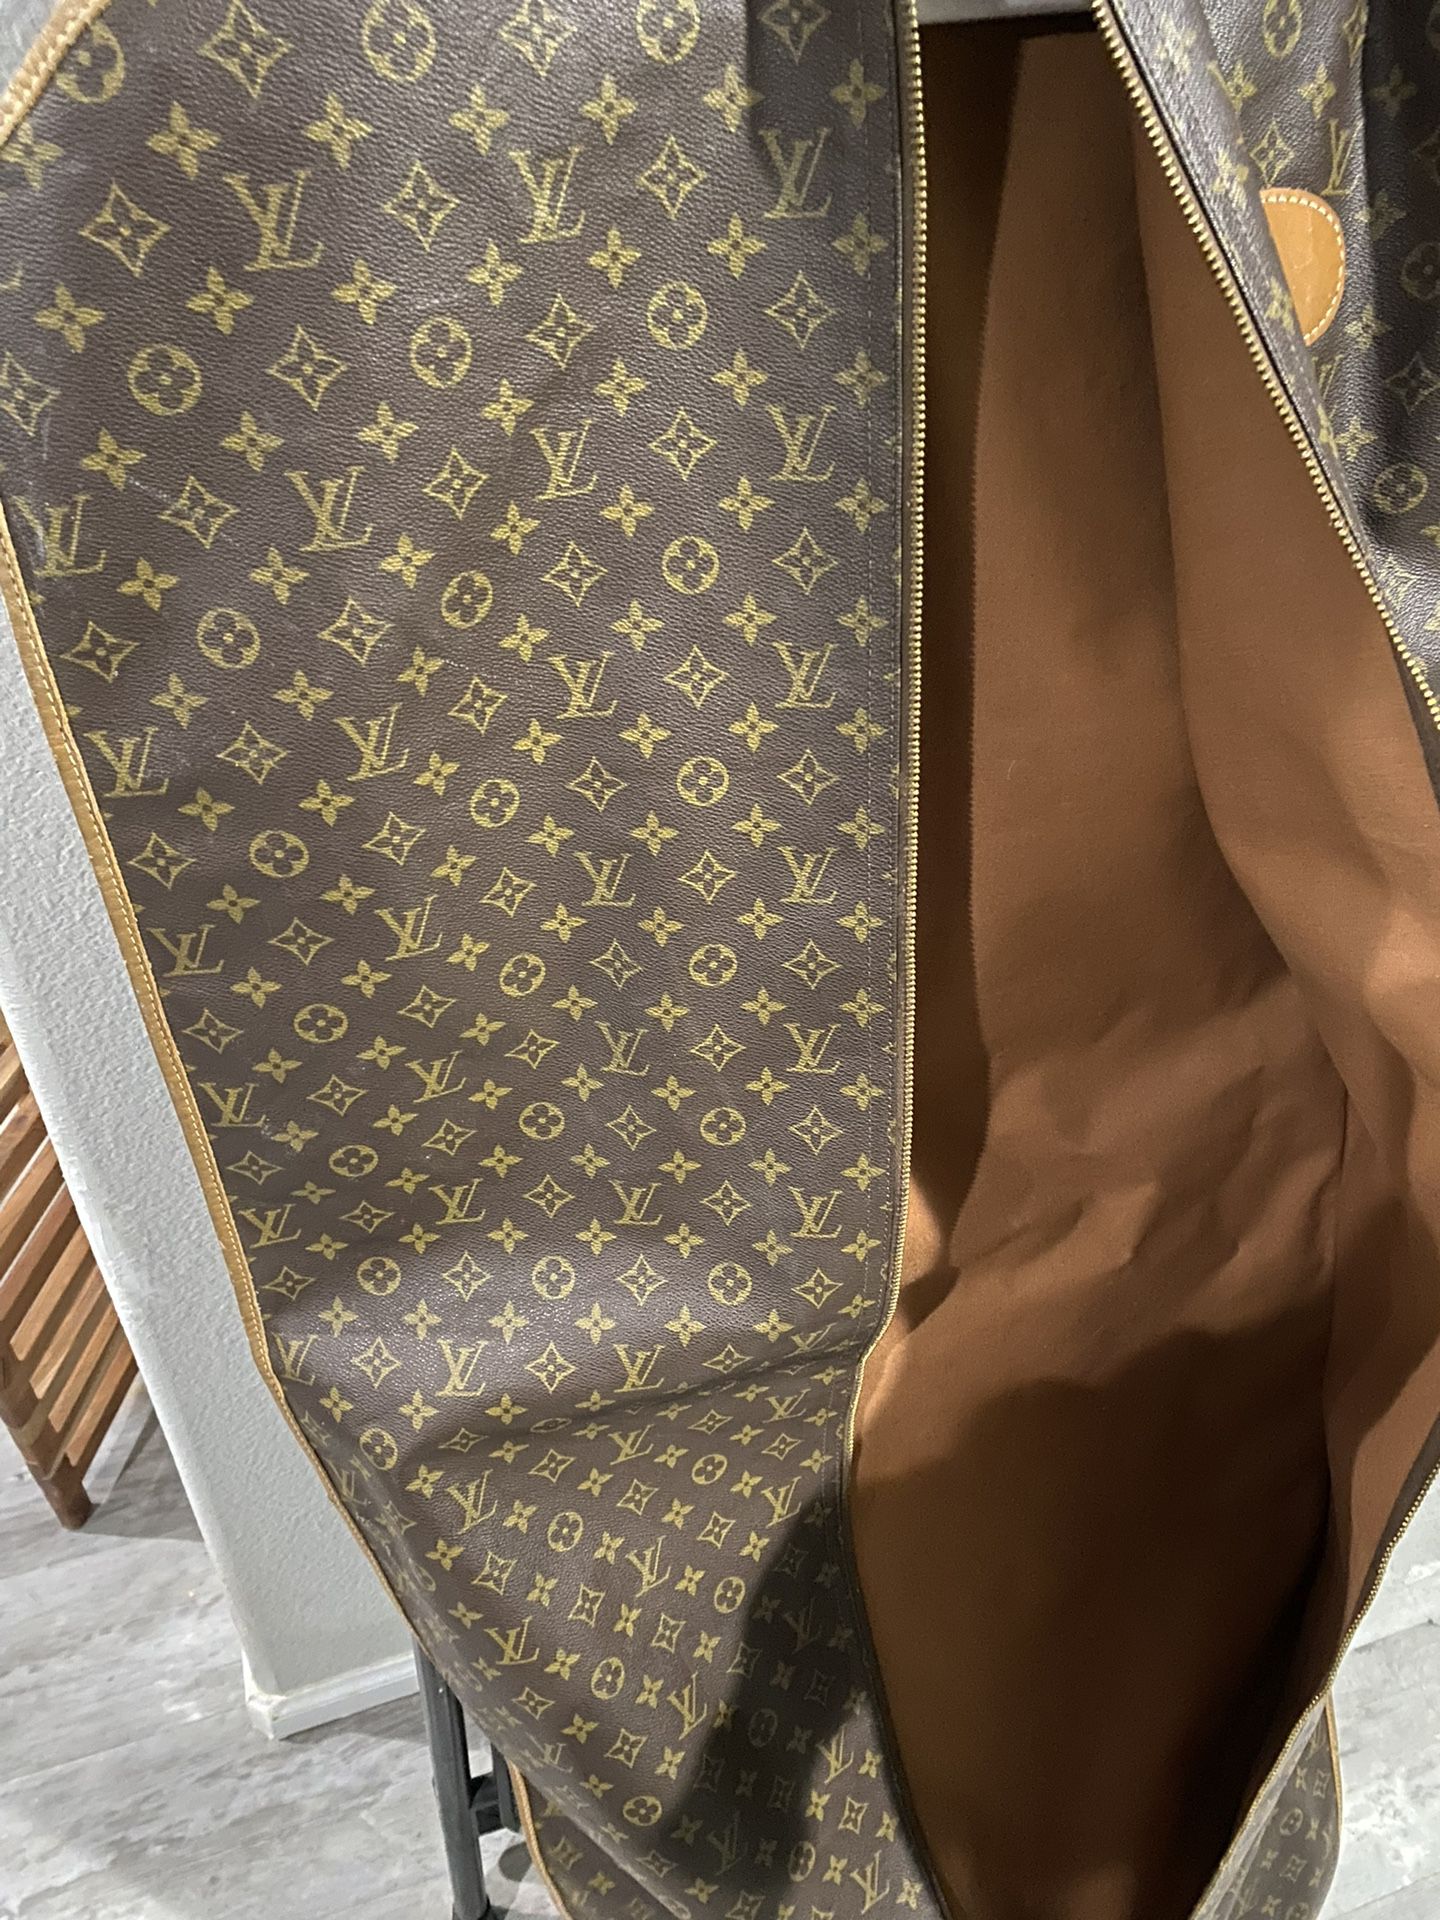 89 Louis Vuitton garment bag. Got it for $10 : r/ThriftStoreHauls